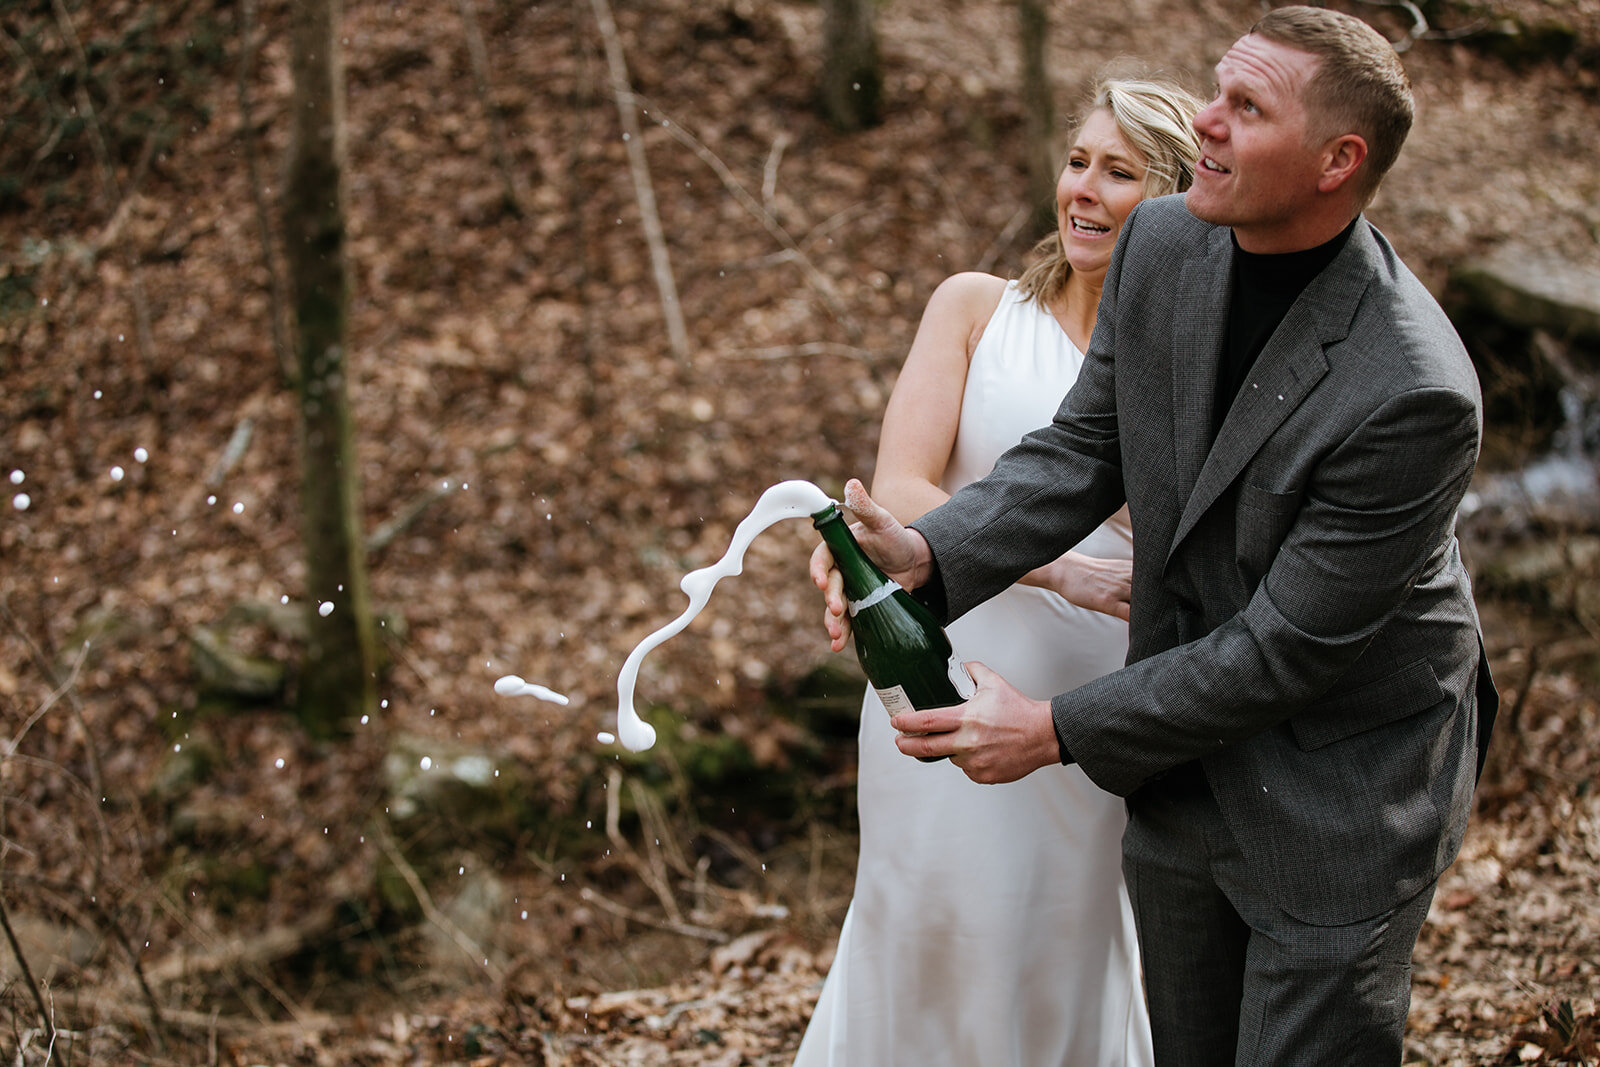 snoopers-rock-adventure-elopement-chattanooga-wedding-photographerfoster-falls-elopement-chattanooga-wedding-photographer-571_websize.jpg